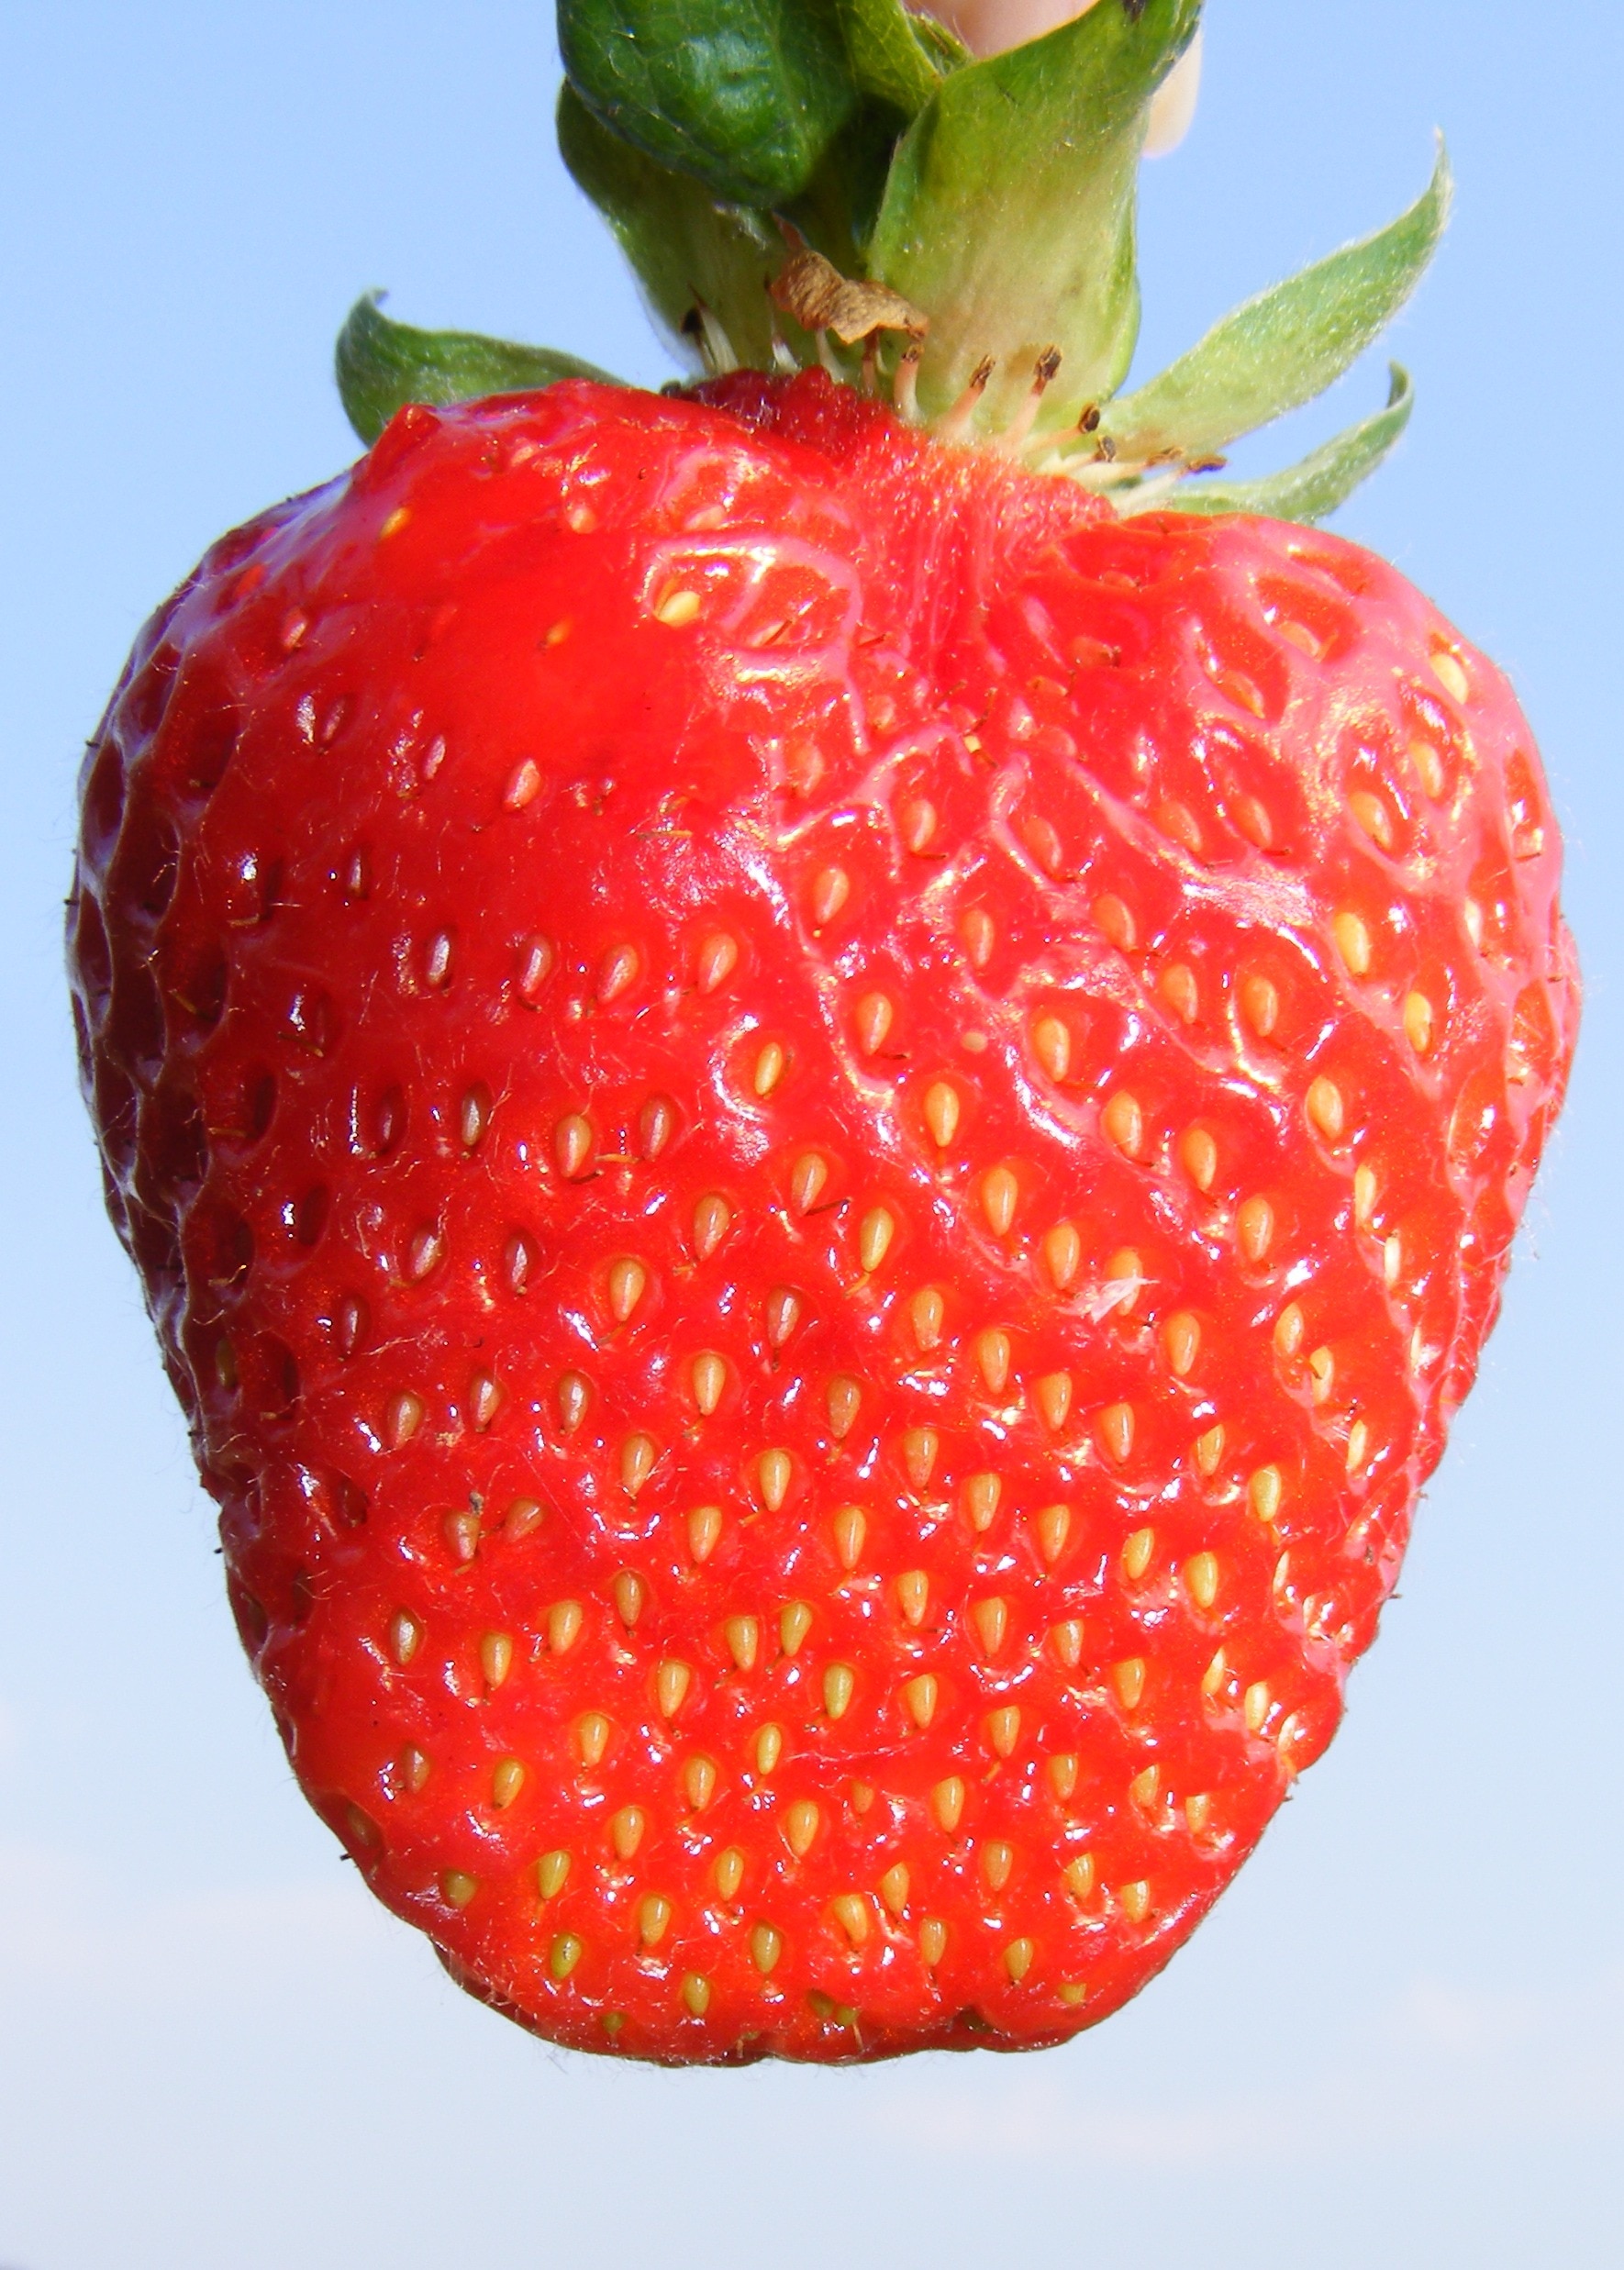 Strawberry, Girl, Sky, Blue, Fresh, Hand, red, fruit